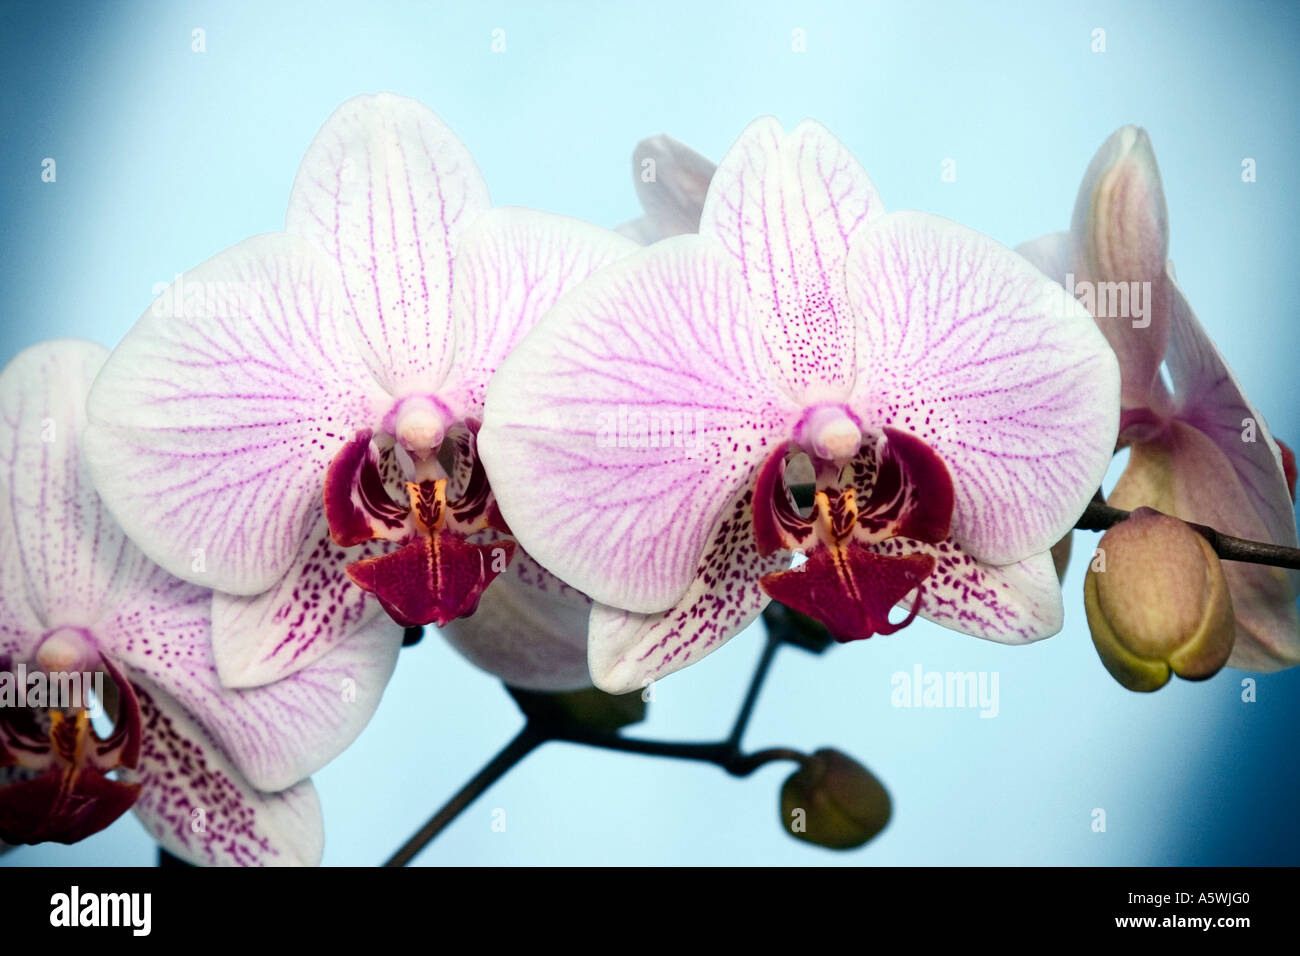 Rosa orchidee falena 'Phalaenopsis' sparato contro un fondo azzurro Foto Stock